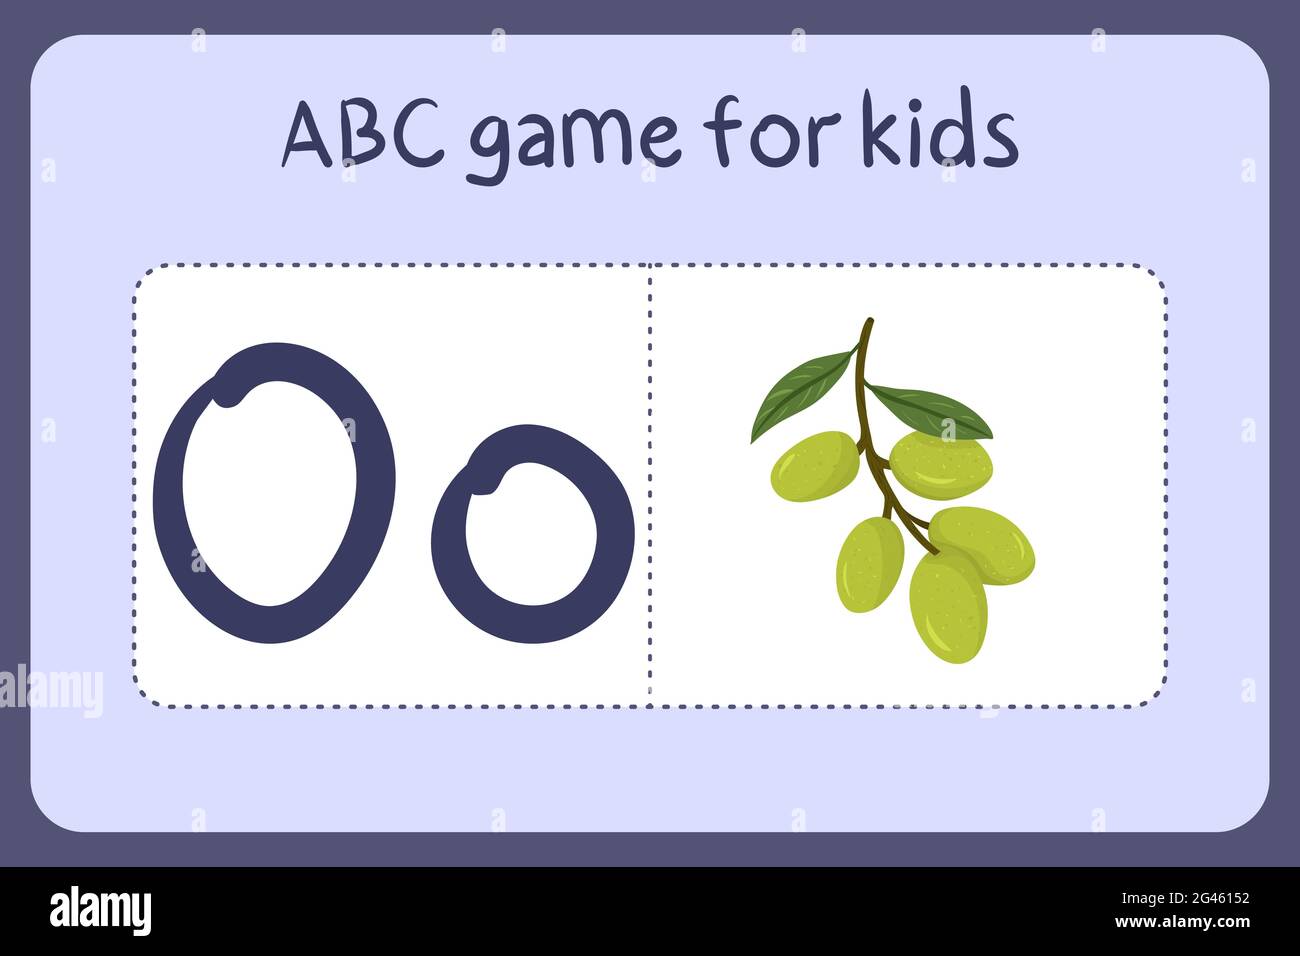 Kind Alphabet Mini-Spiele im Cartoon-Stil mit dem Buchstaben O - olive. Vektor-Illustration für Spiel-Design - Schneiden und spielen. Lerne abc mit Flash-Karten für Obst und Gemüse. Stock Vektor